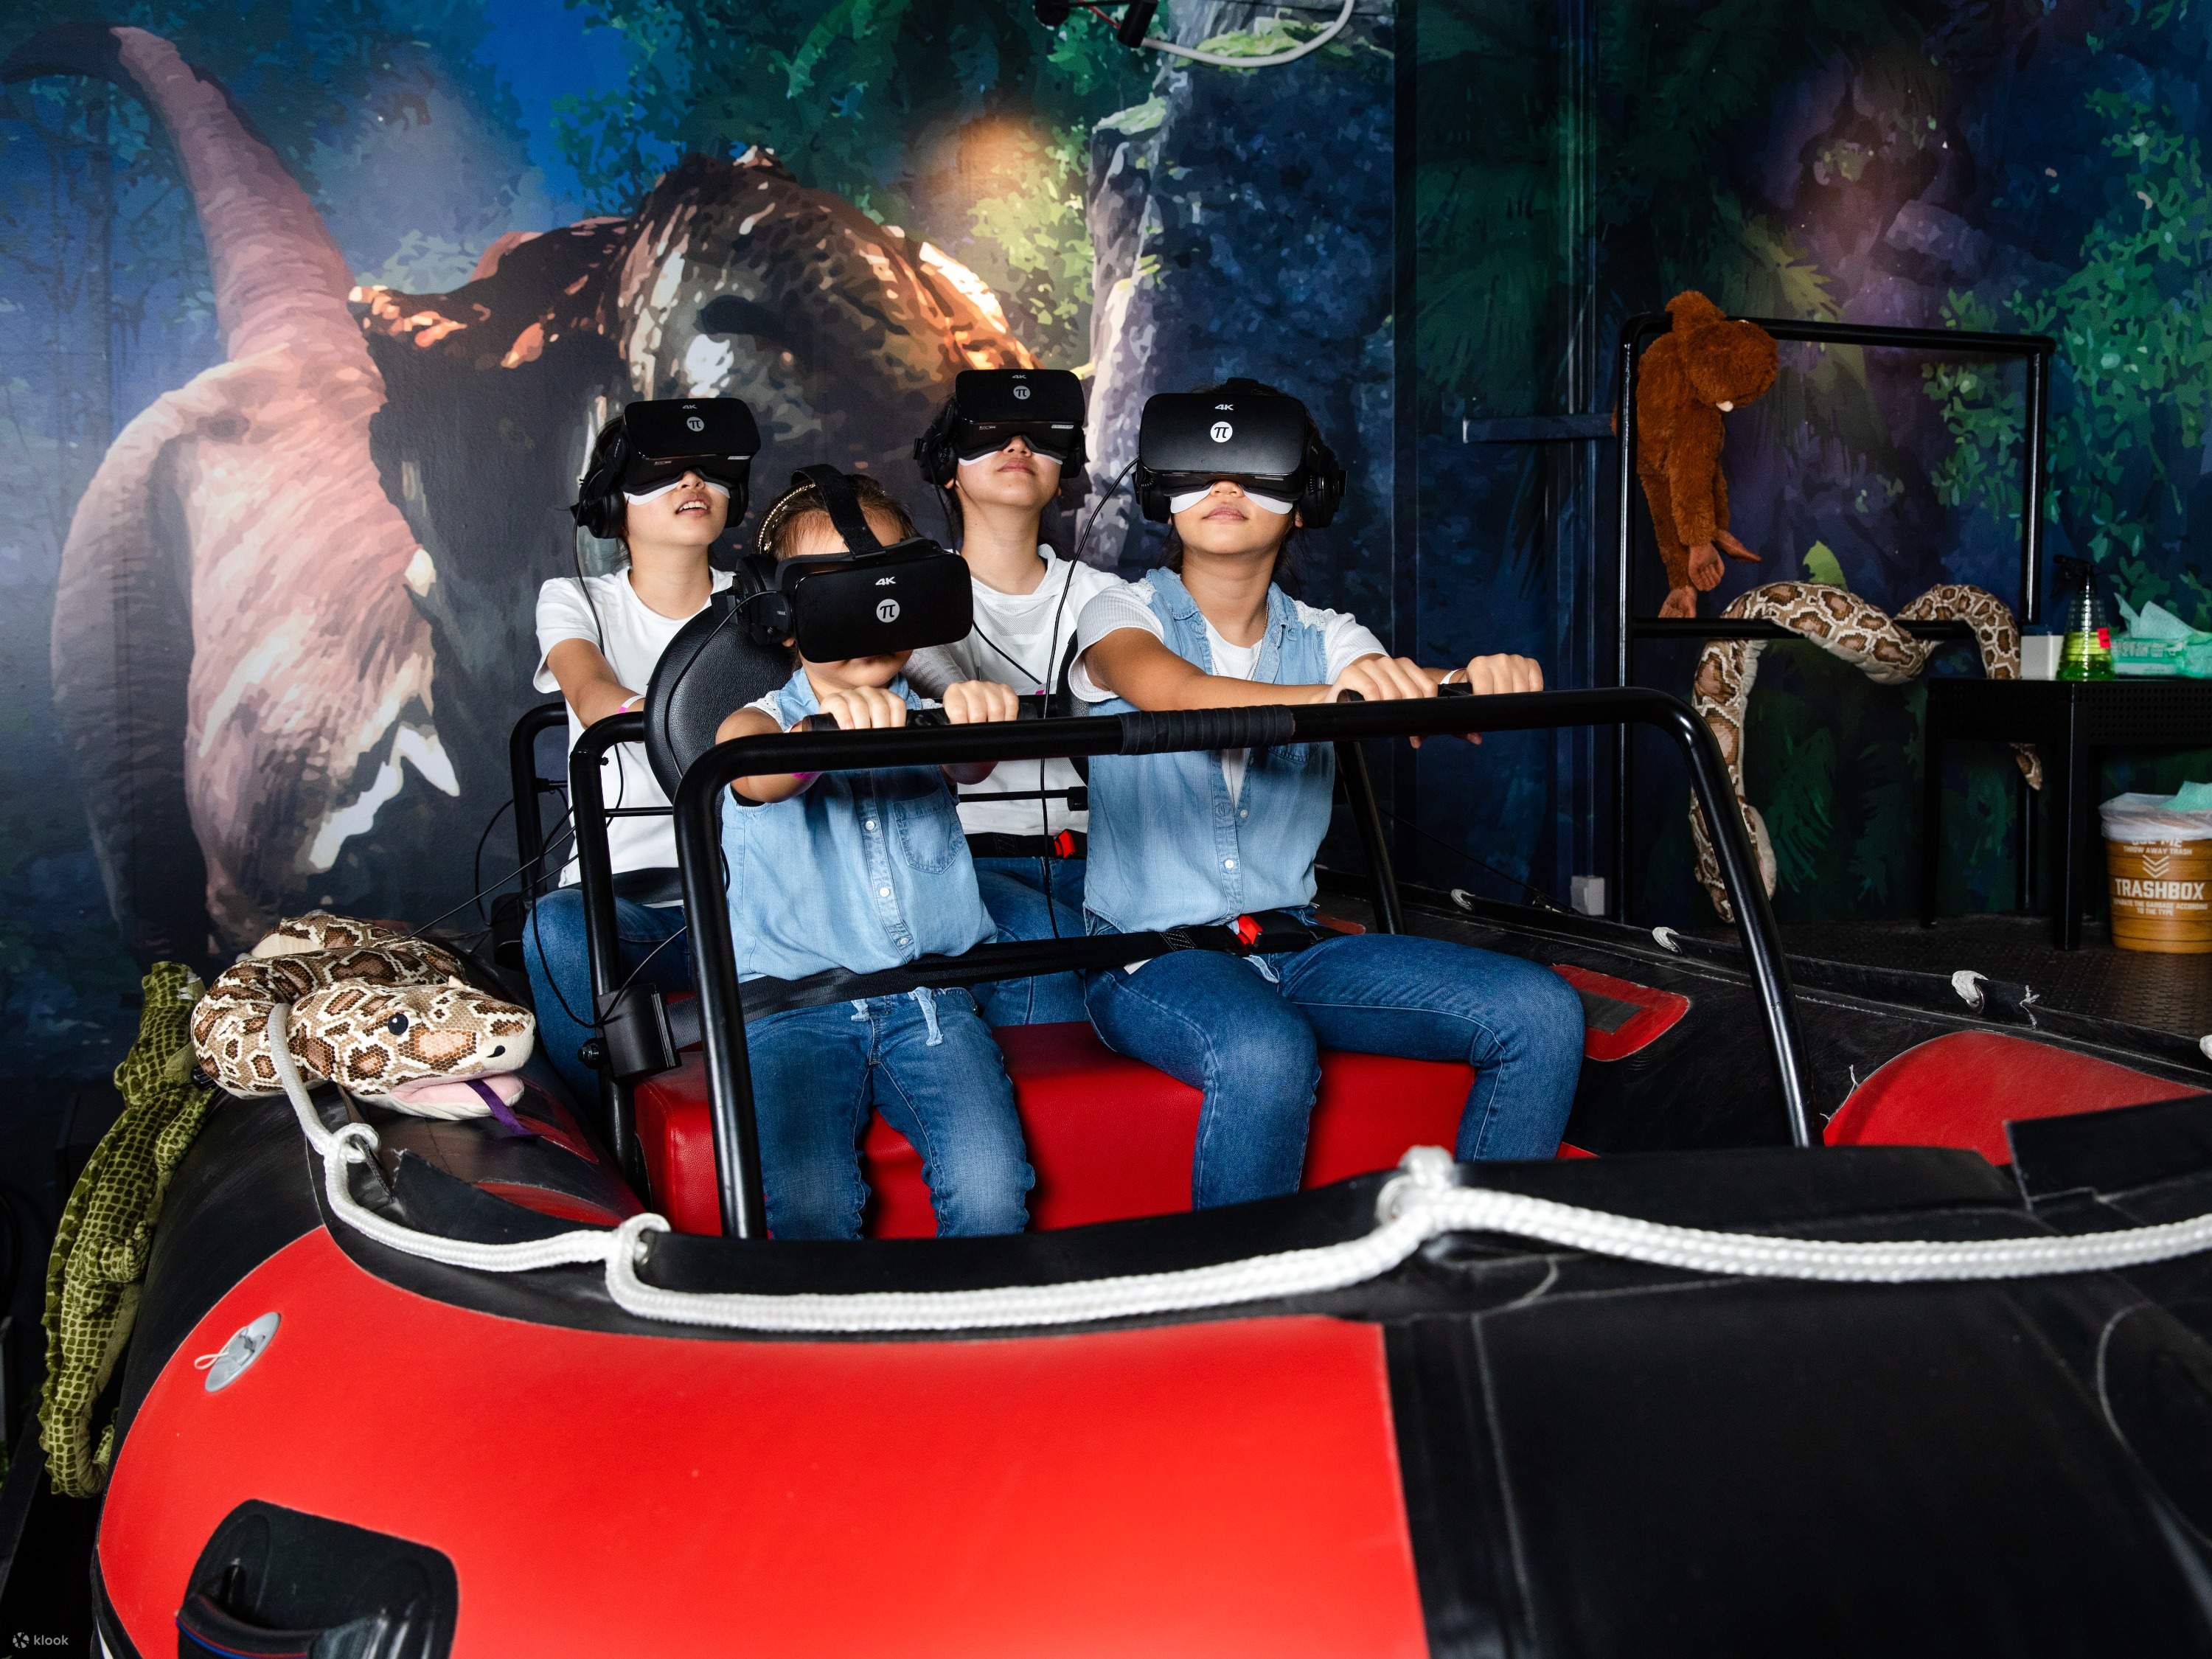 สวนสนุกโลกเสมือนจริง เฮดร็อก วีอาร์ (HeadRock VR) ในเซ็นโตซ่า - Klook ประเทศไทย